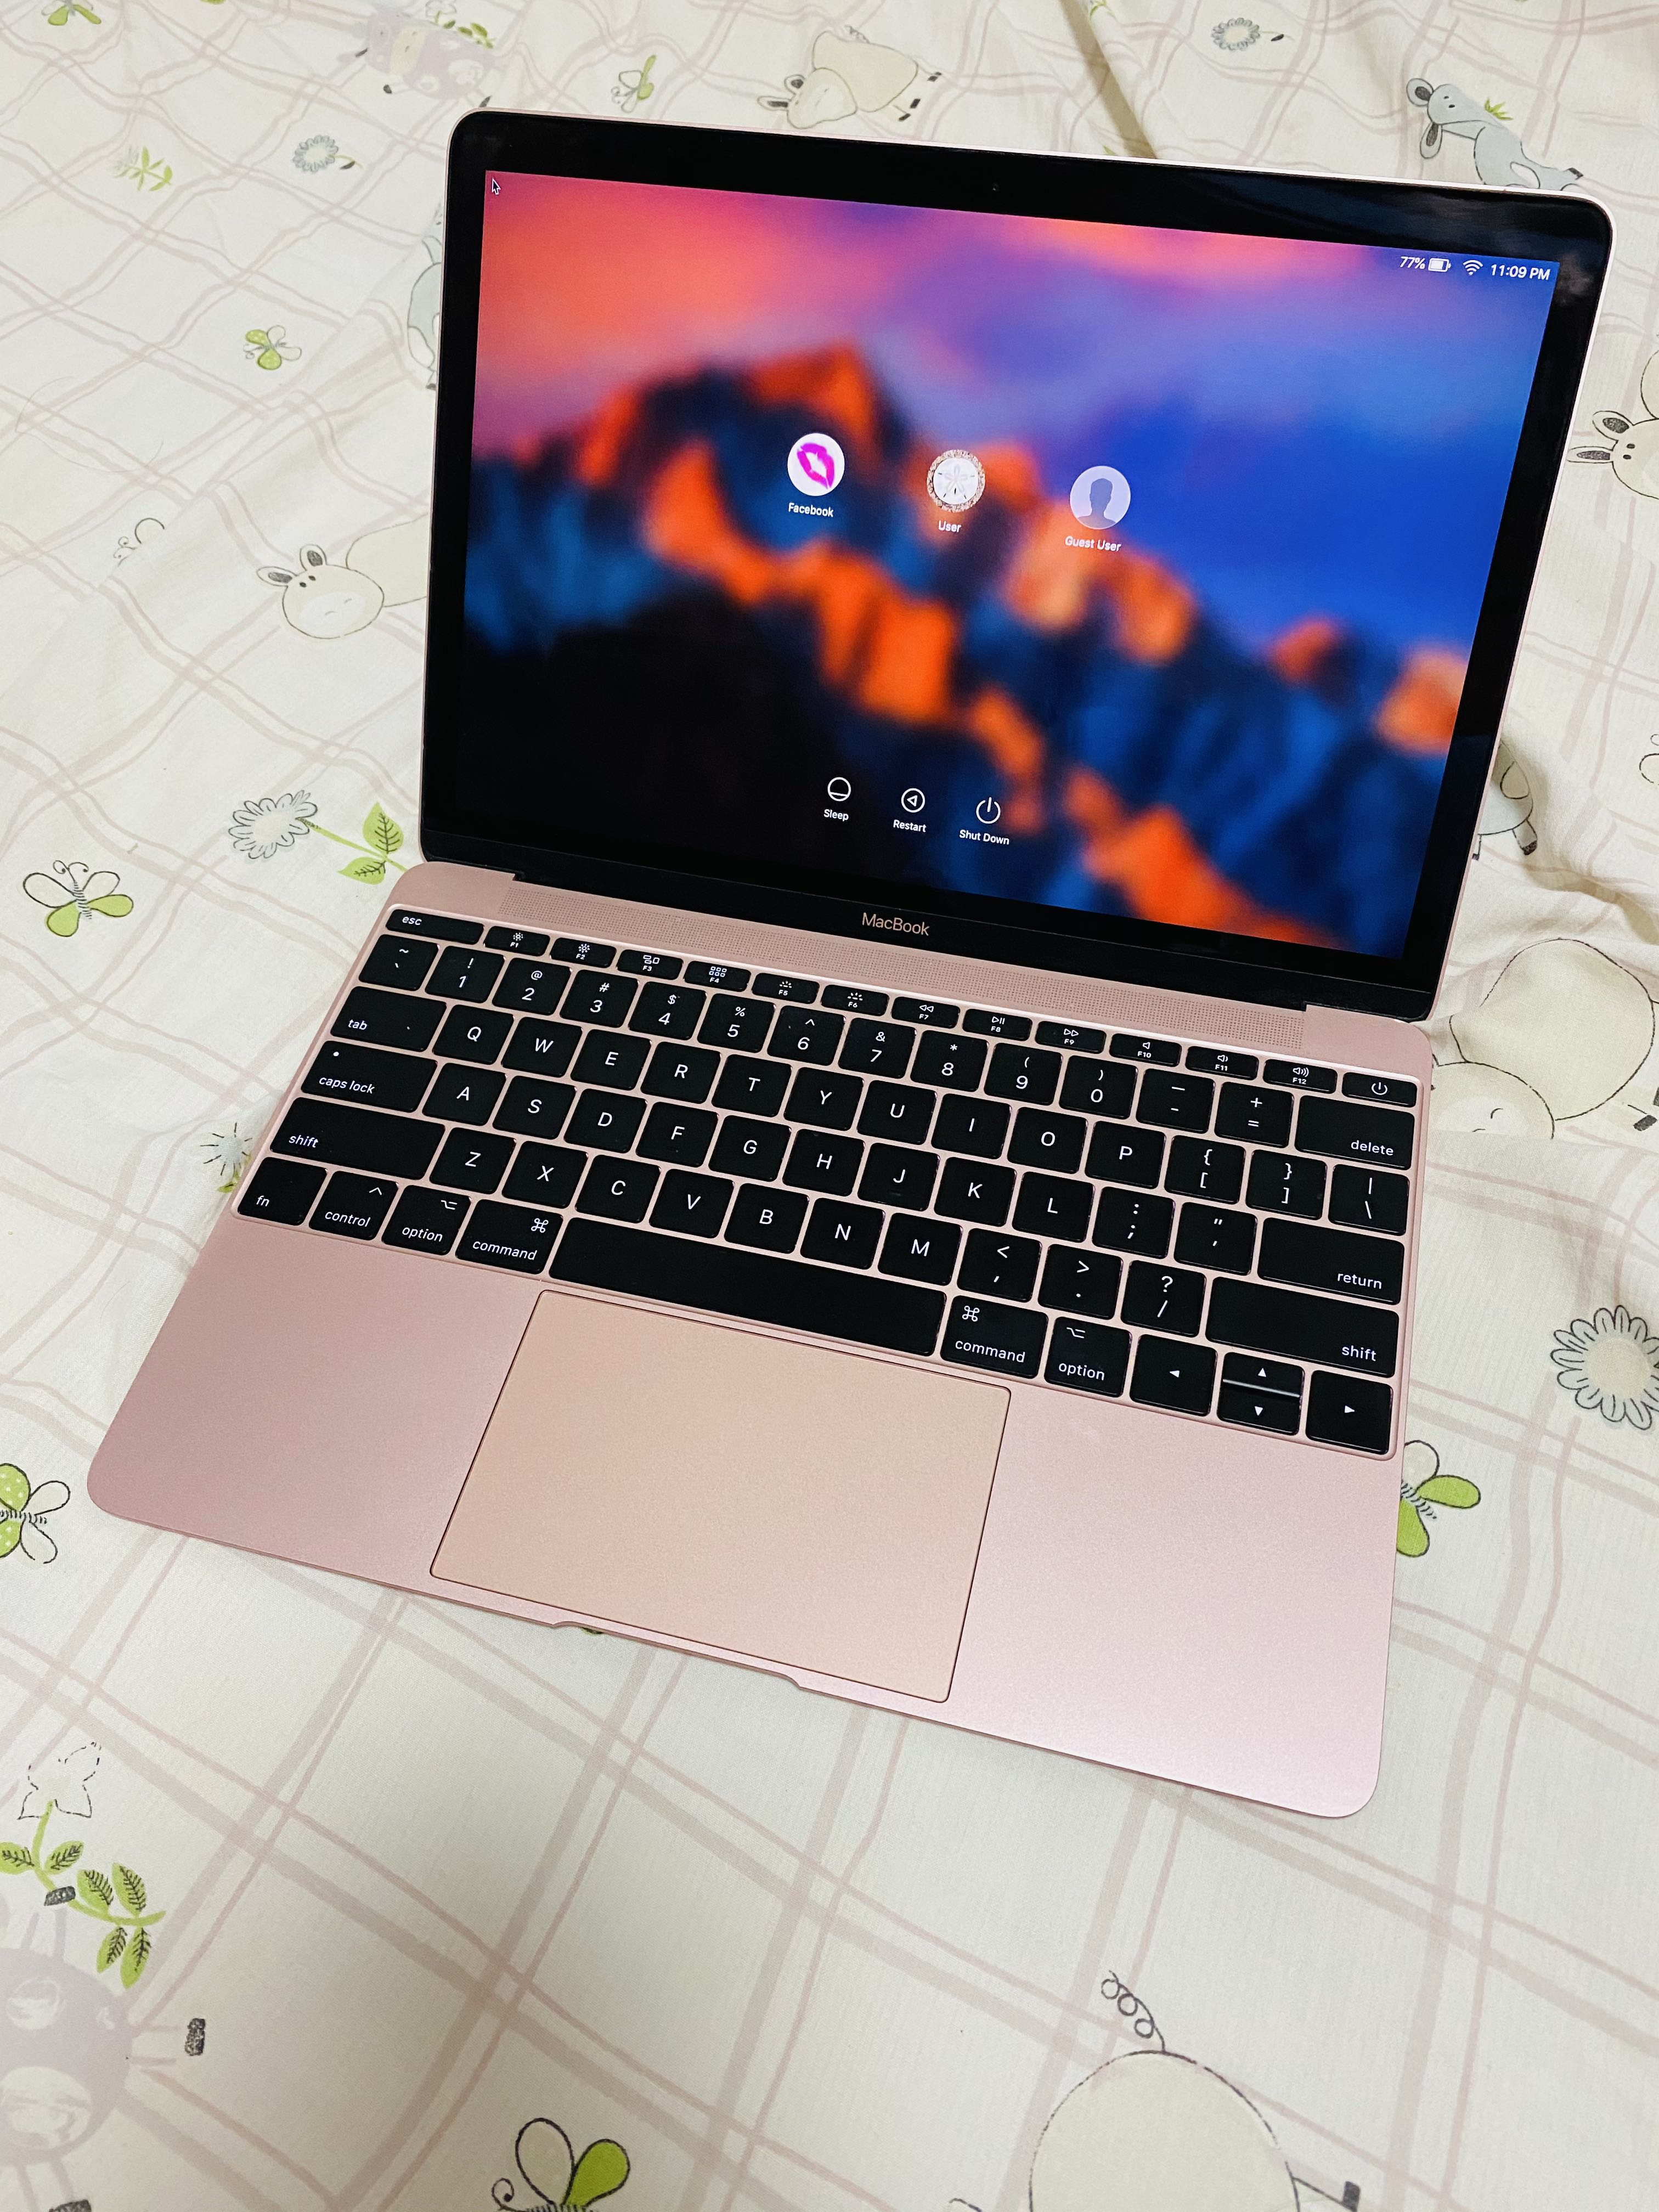 MacBook 2017 (12-inch, Gold)